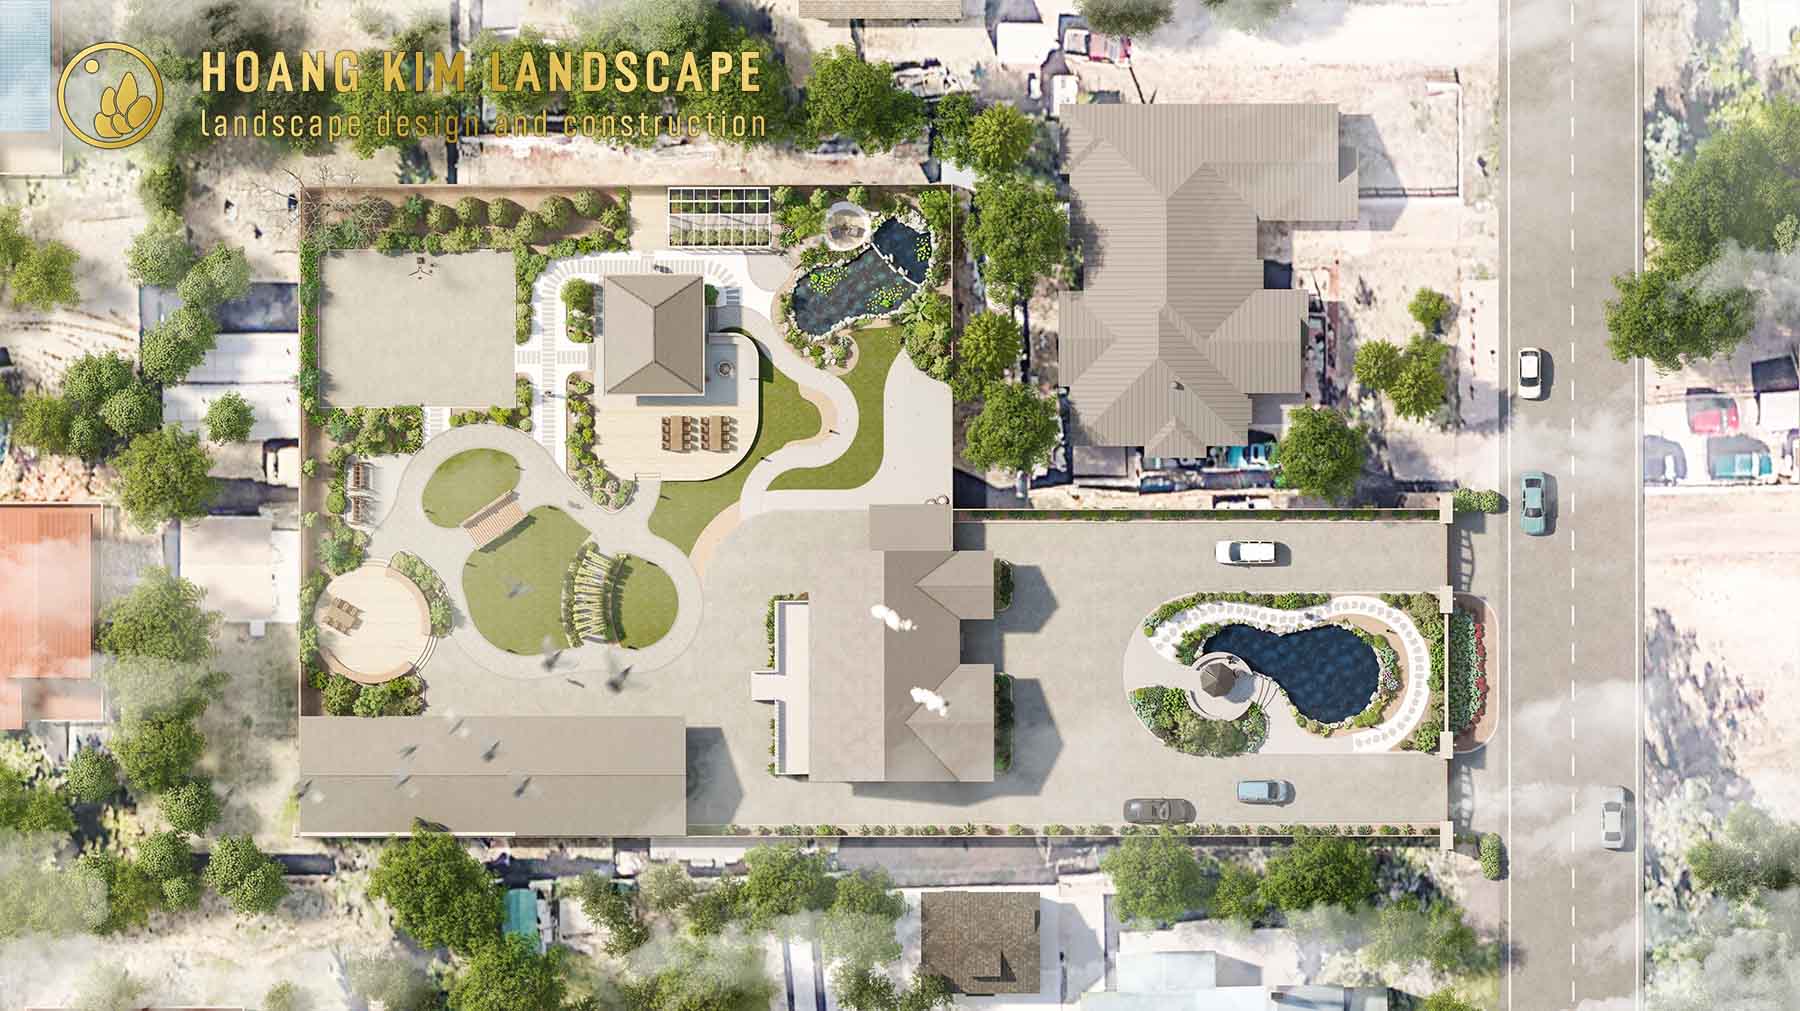 Cảnh quan sân vườn Ms. Emmalee - USA là một trong những dự án trọng điểm của Hoàng Kim Landscape trong cuối năm 2022, vừa được hoàn thành vào những ngày đầu tháng 11 này.